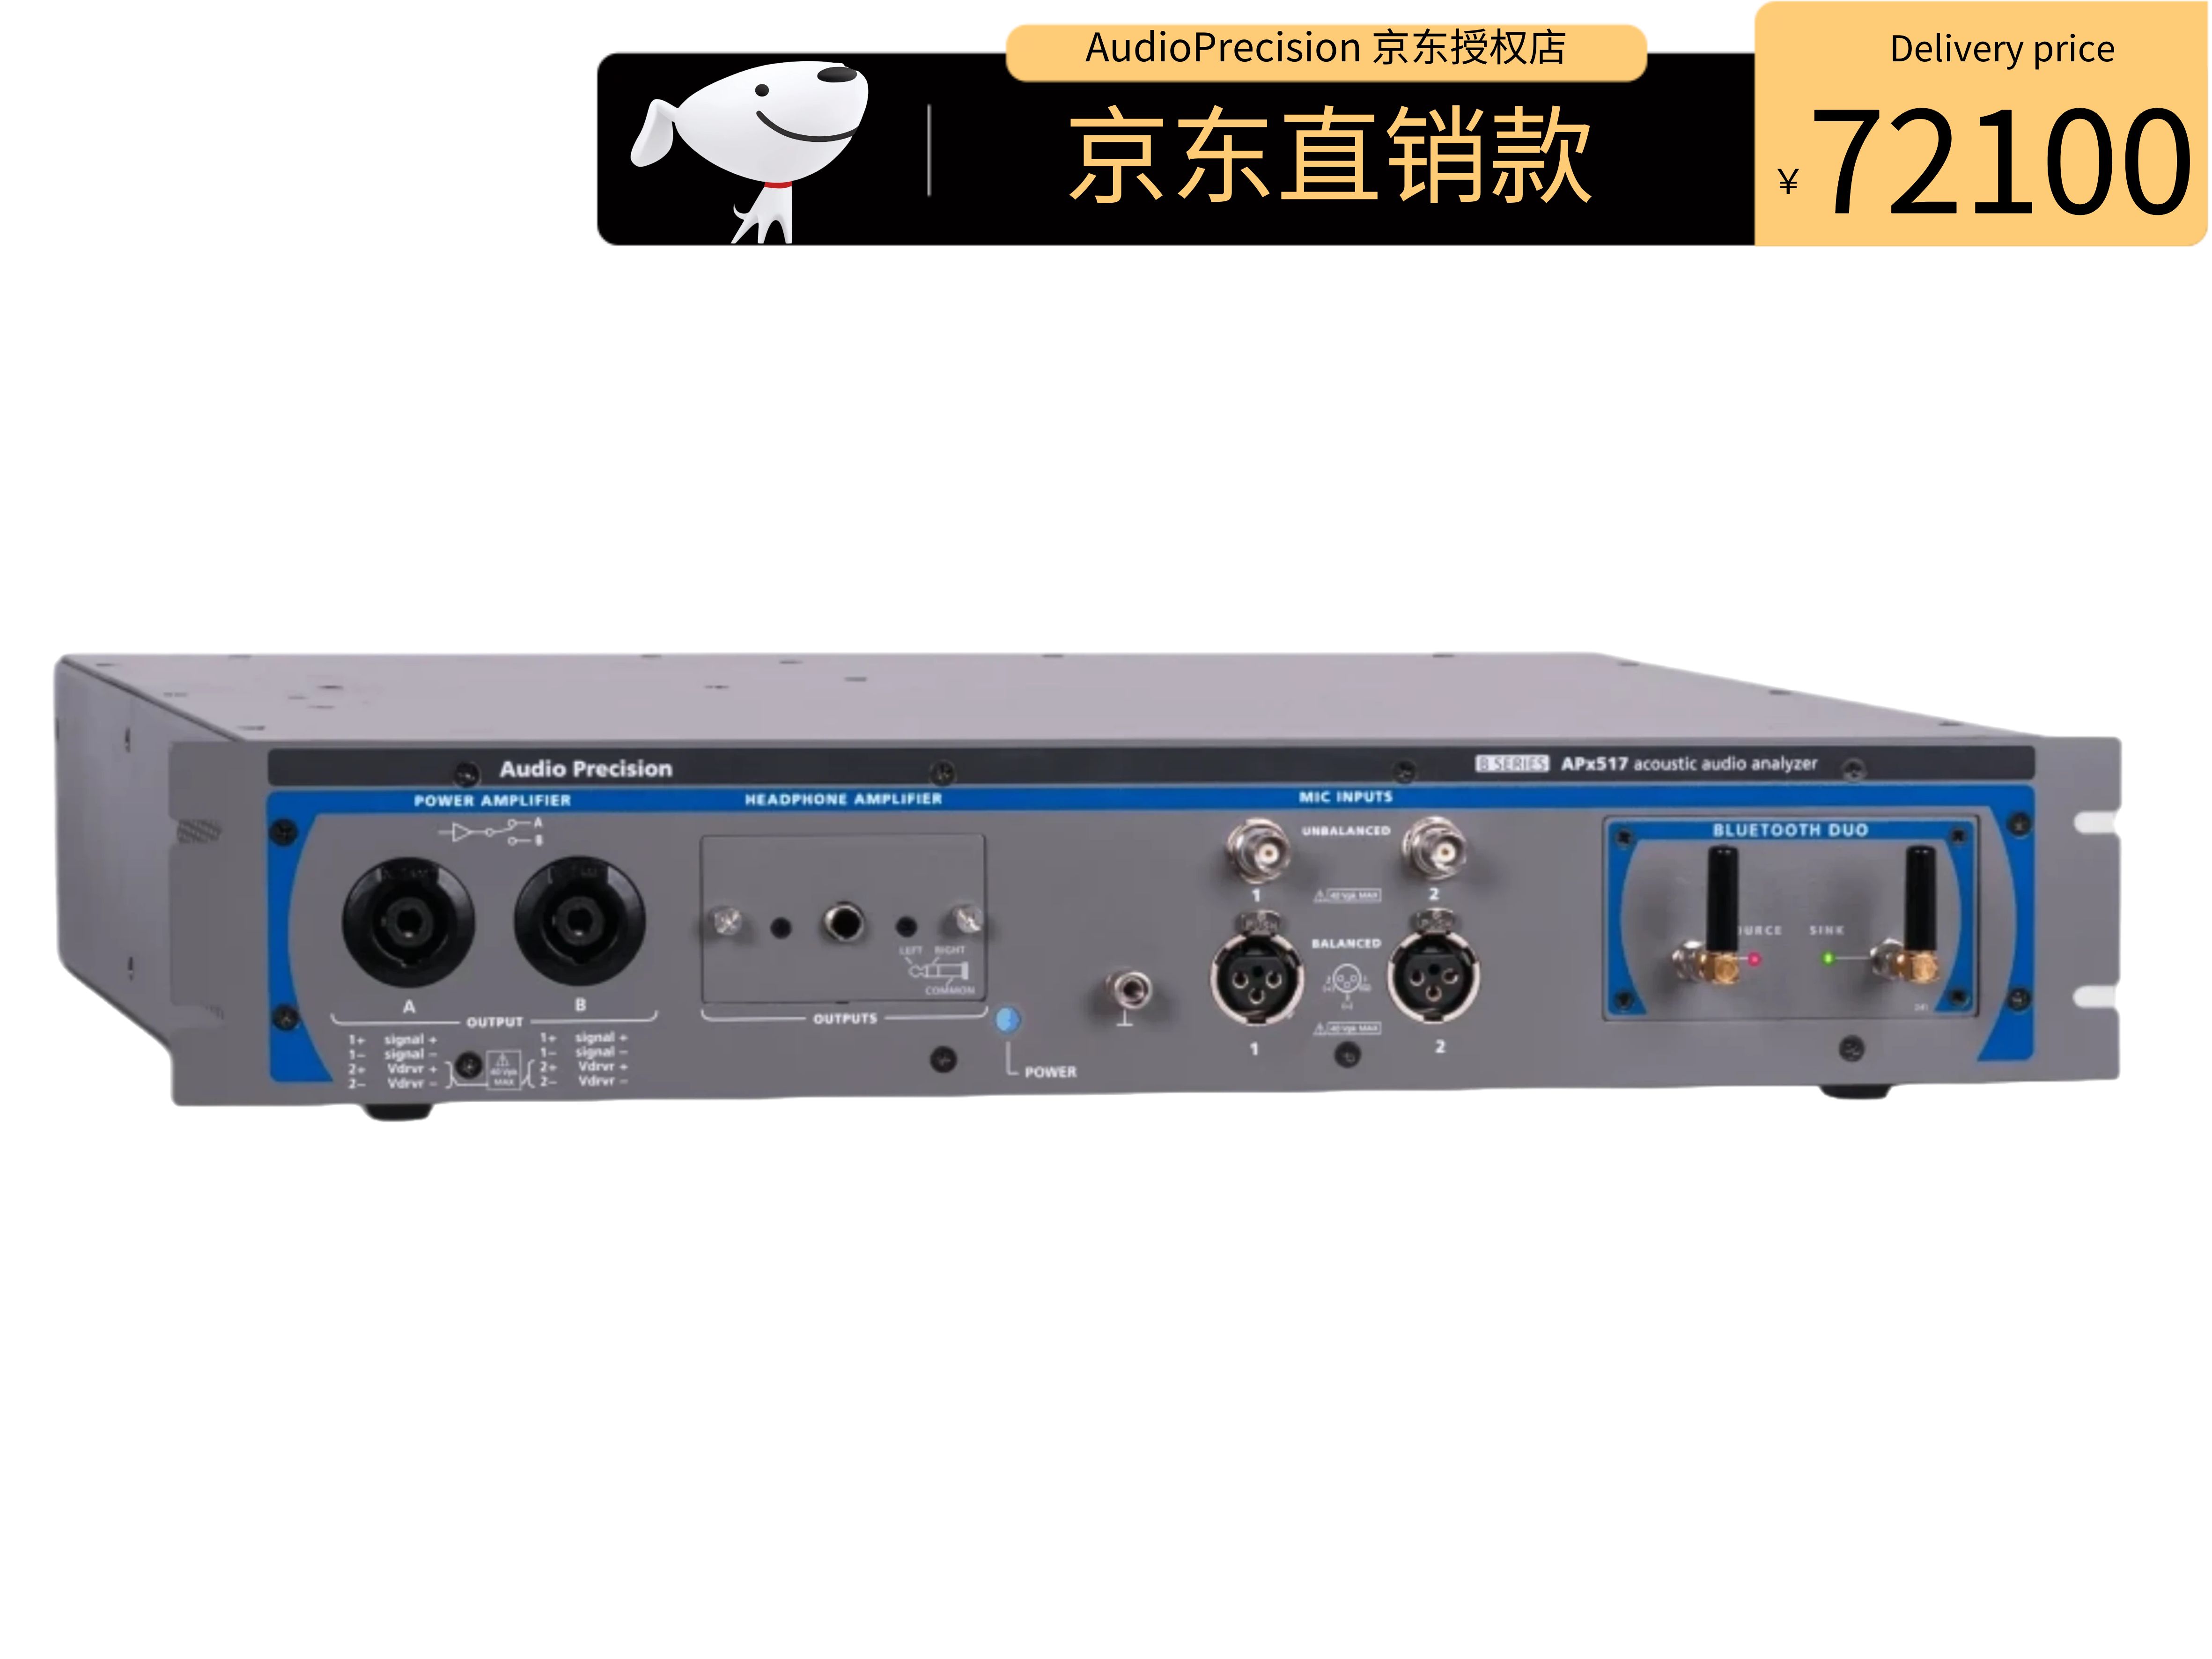 AudioPrecision APx517B 音频分析仪